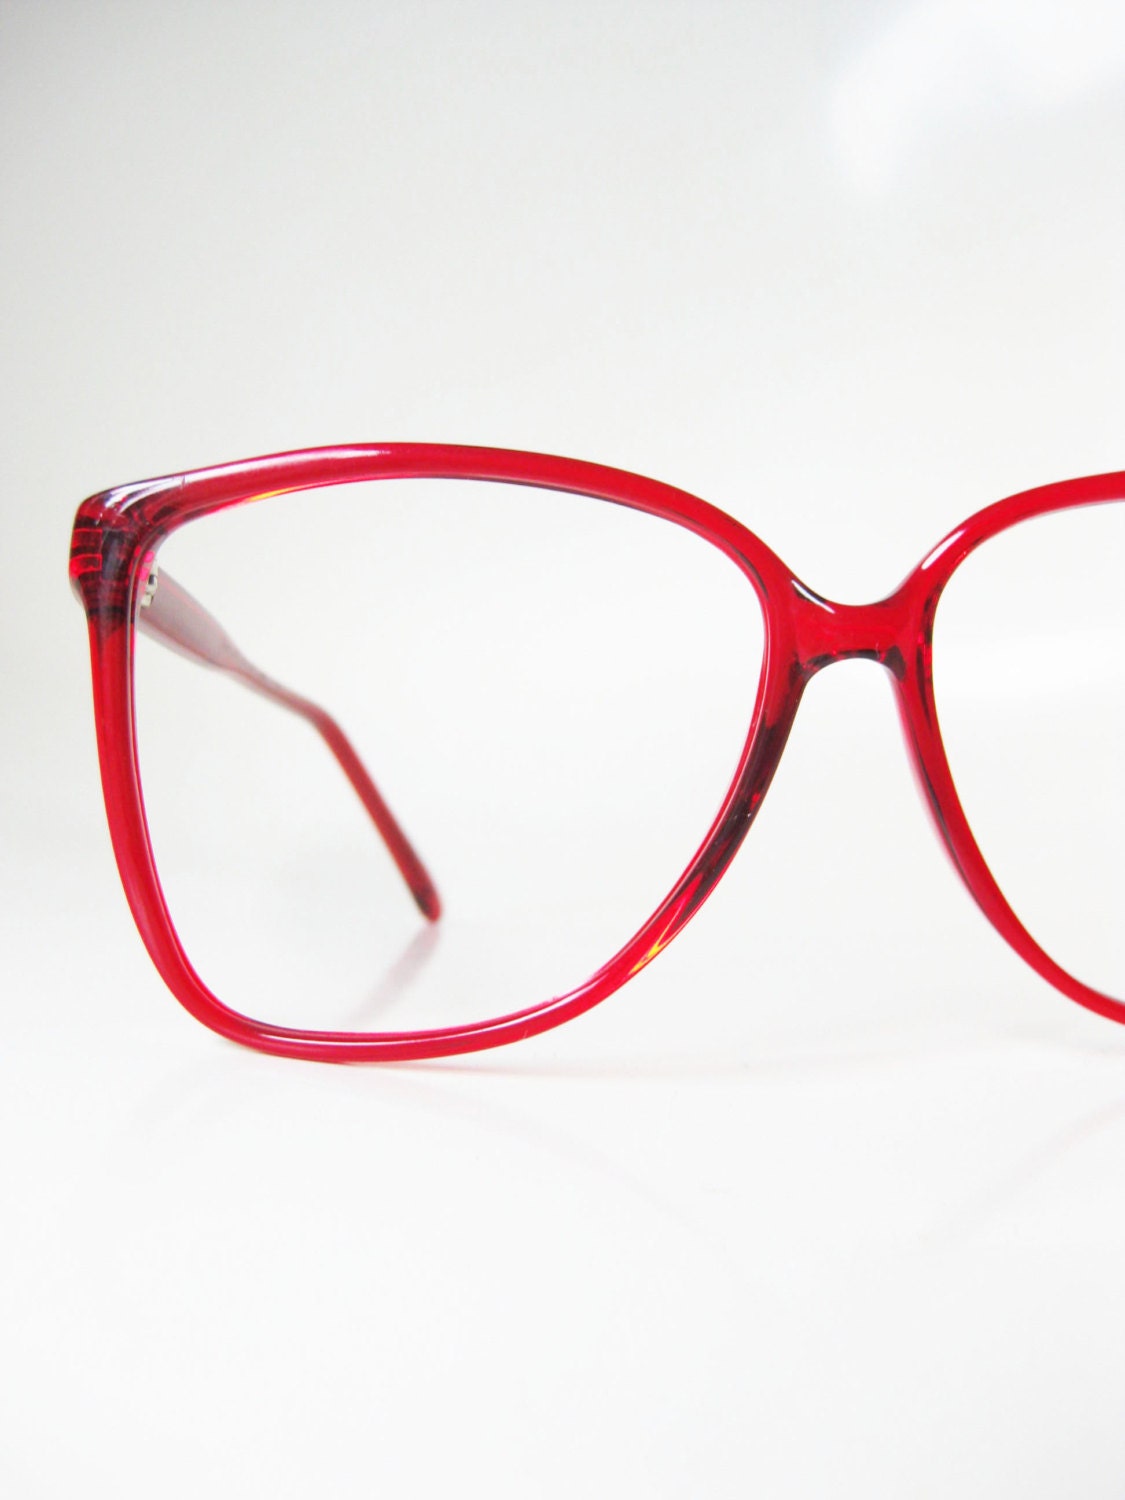 Cherry Red Eyeglasses Womens 1980s Wayfarer Oversized Glasses